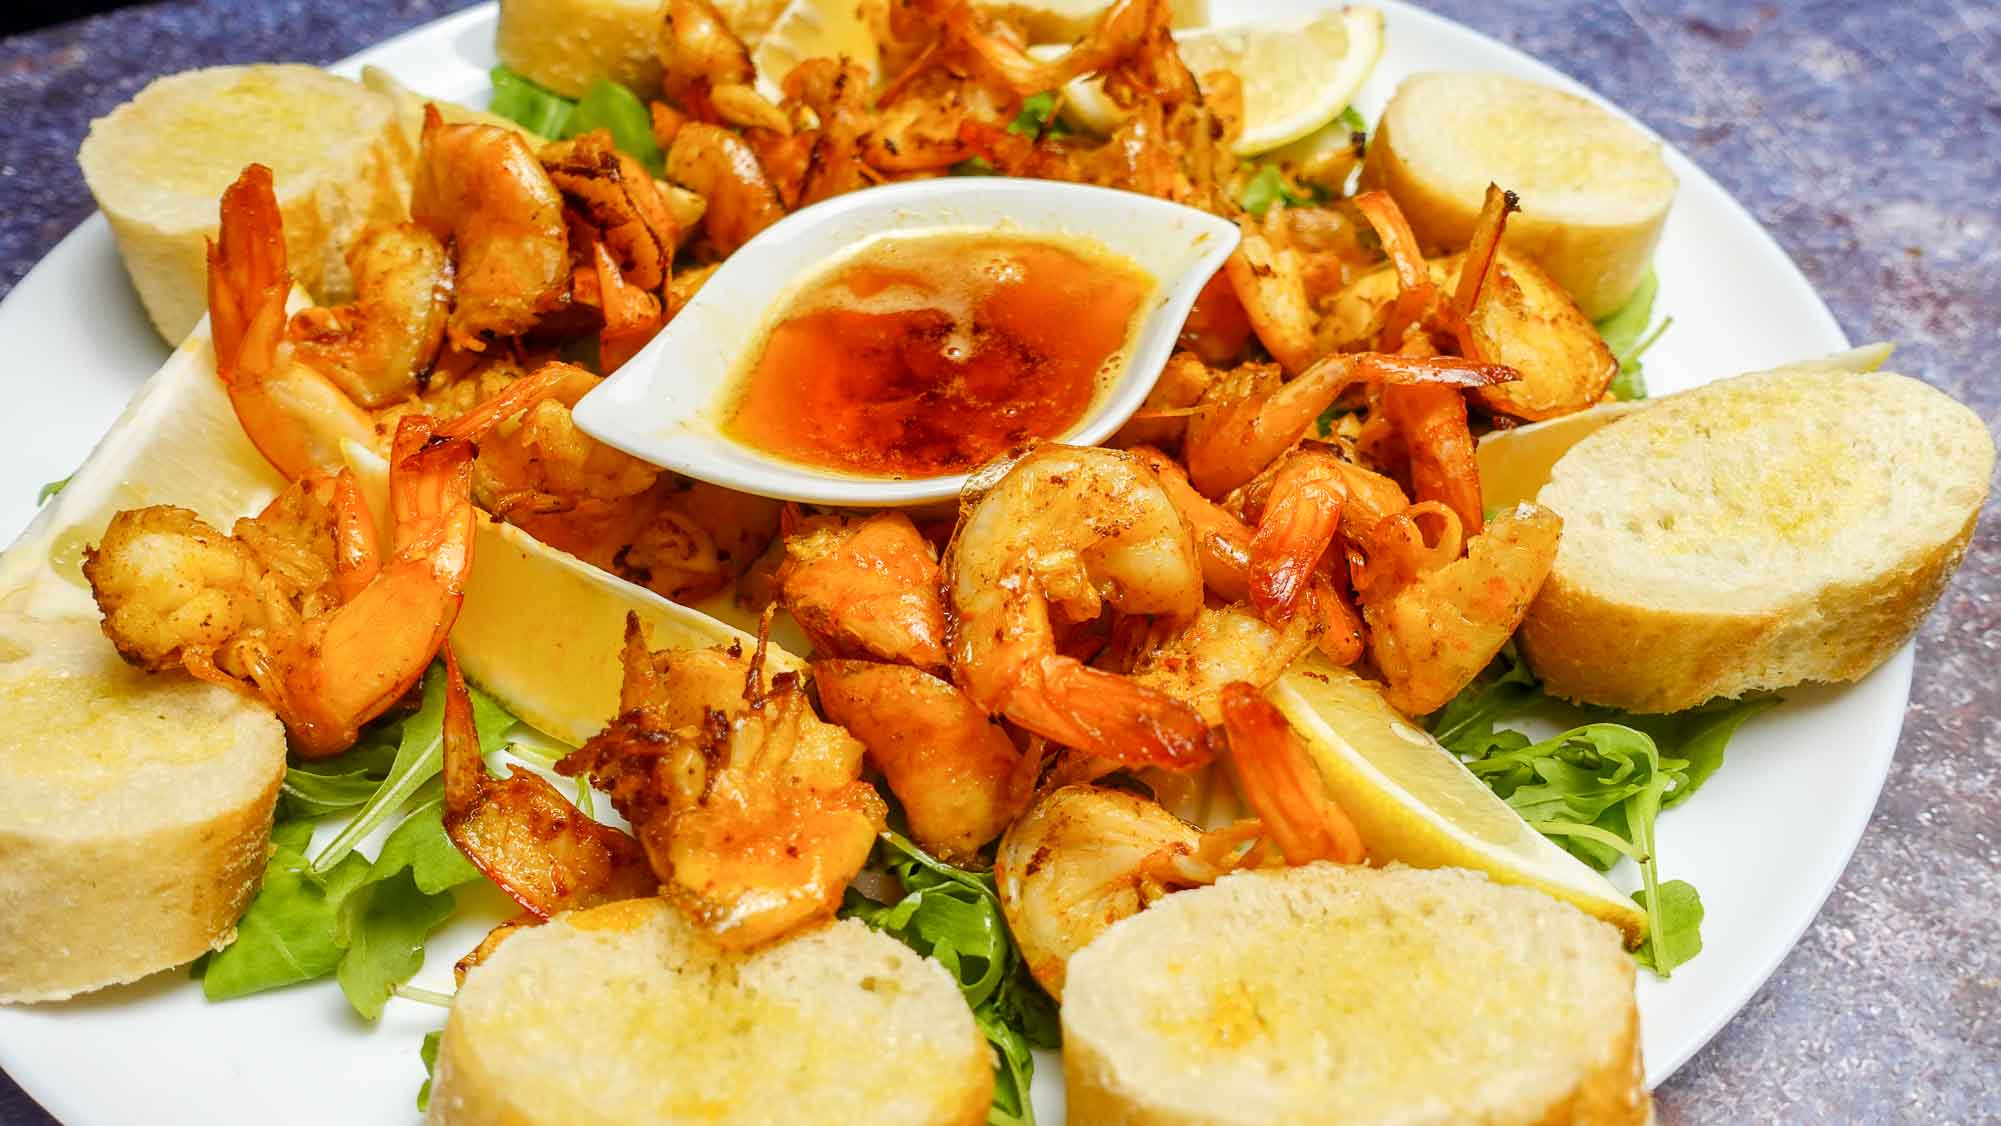 Garlic Butter Shrimp on a plate.